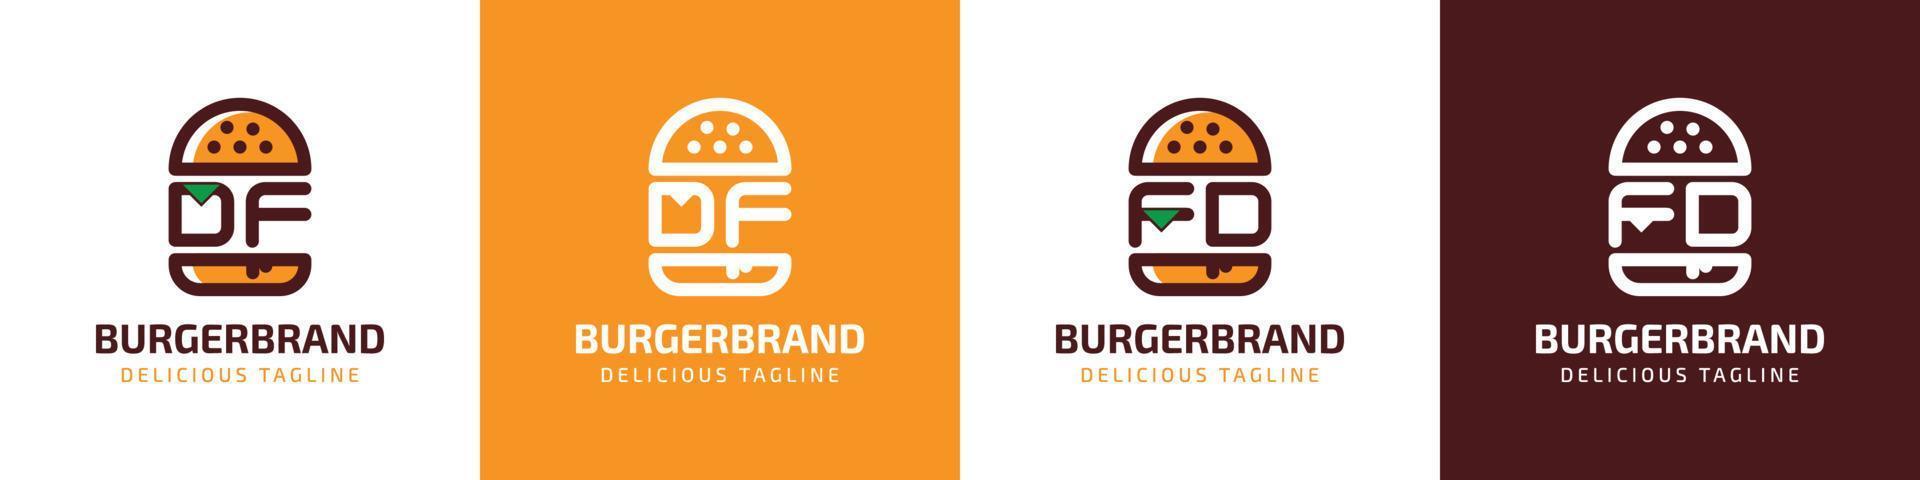 letra df y fd hamburguesa logo, adecuado para ninguna negocio relacionado a hamburguesa con df o fd iniciales. vector